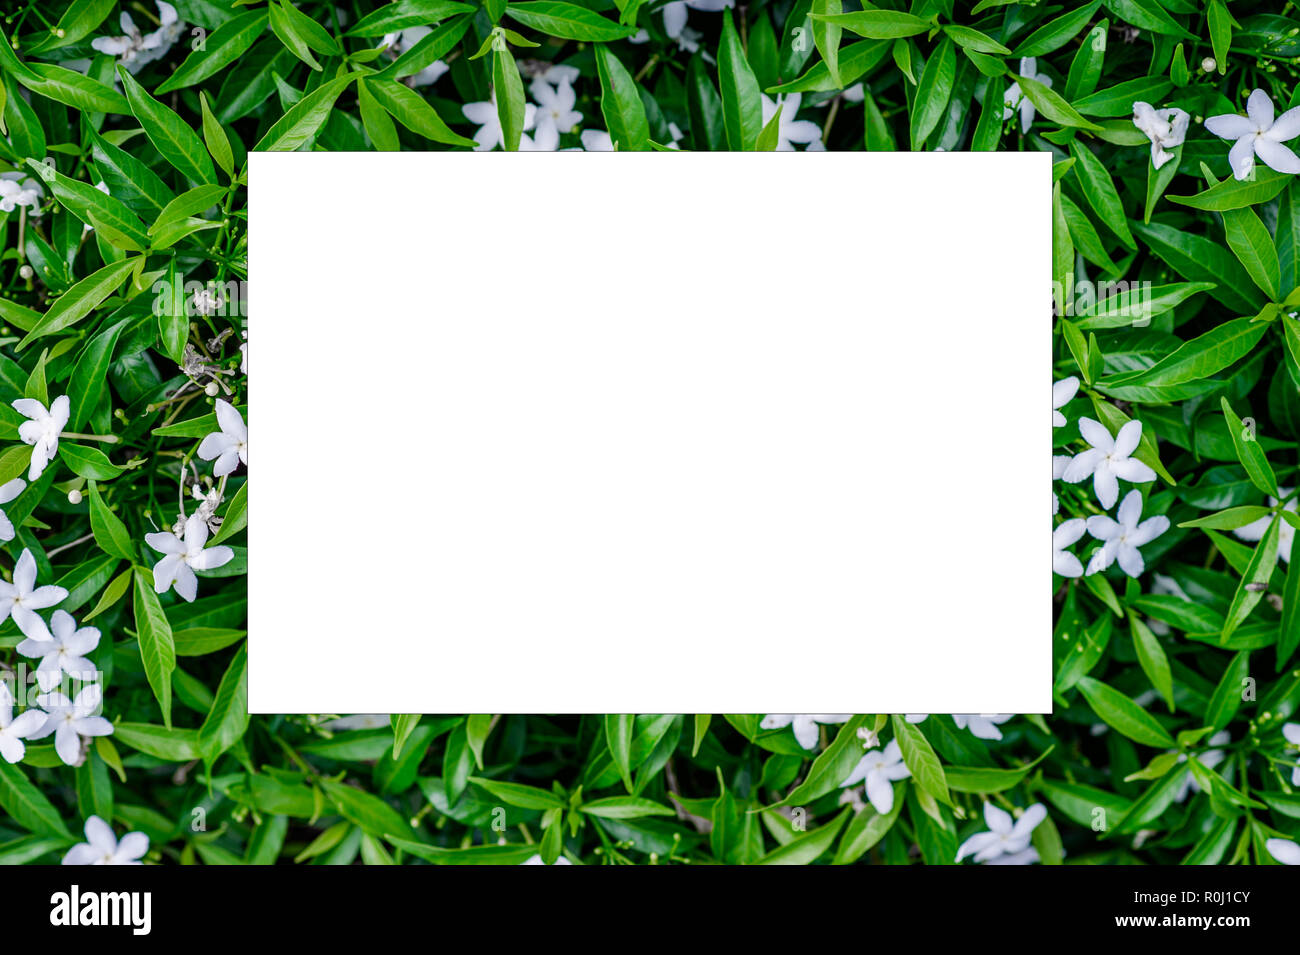 Creative Green Leaf Layout natürliche Quelle Konzept liegend mit weißen Blüten in einer horizontalen Ebene platziert. Stockfoto